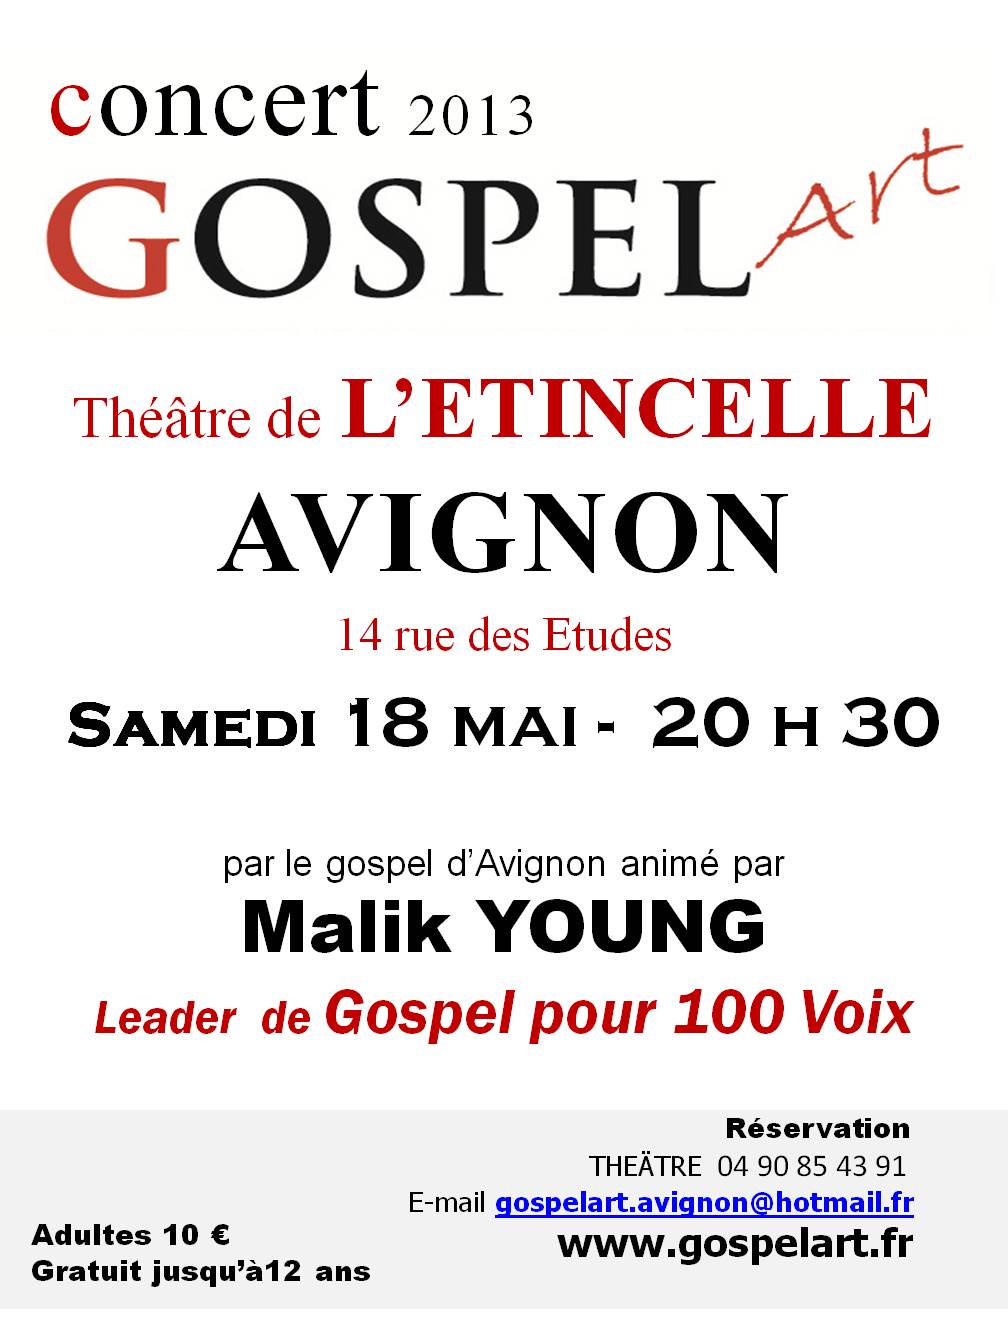 concert-malik-young-gospel-100-Voix-avignon